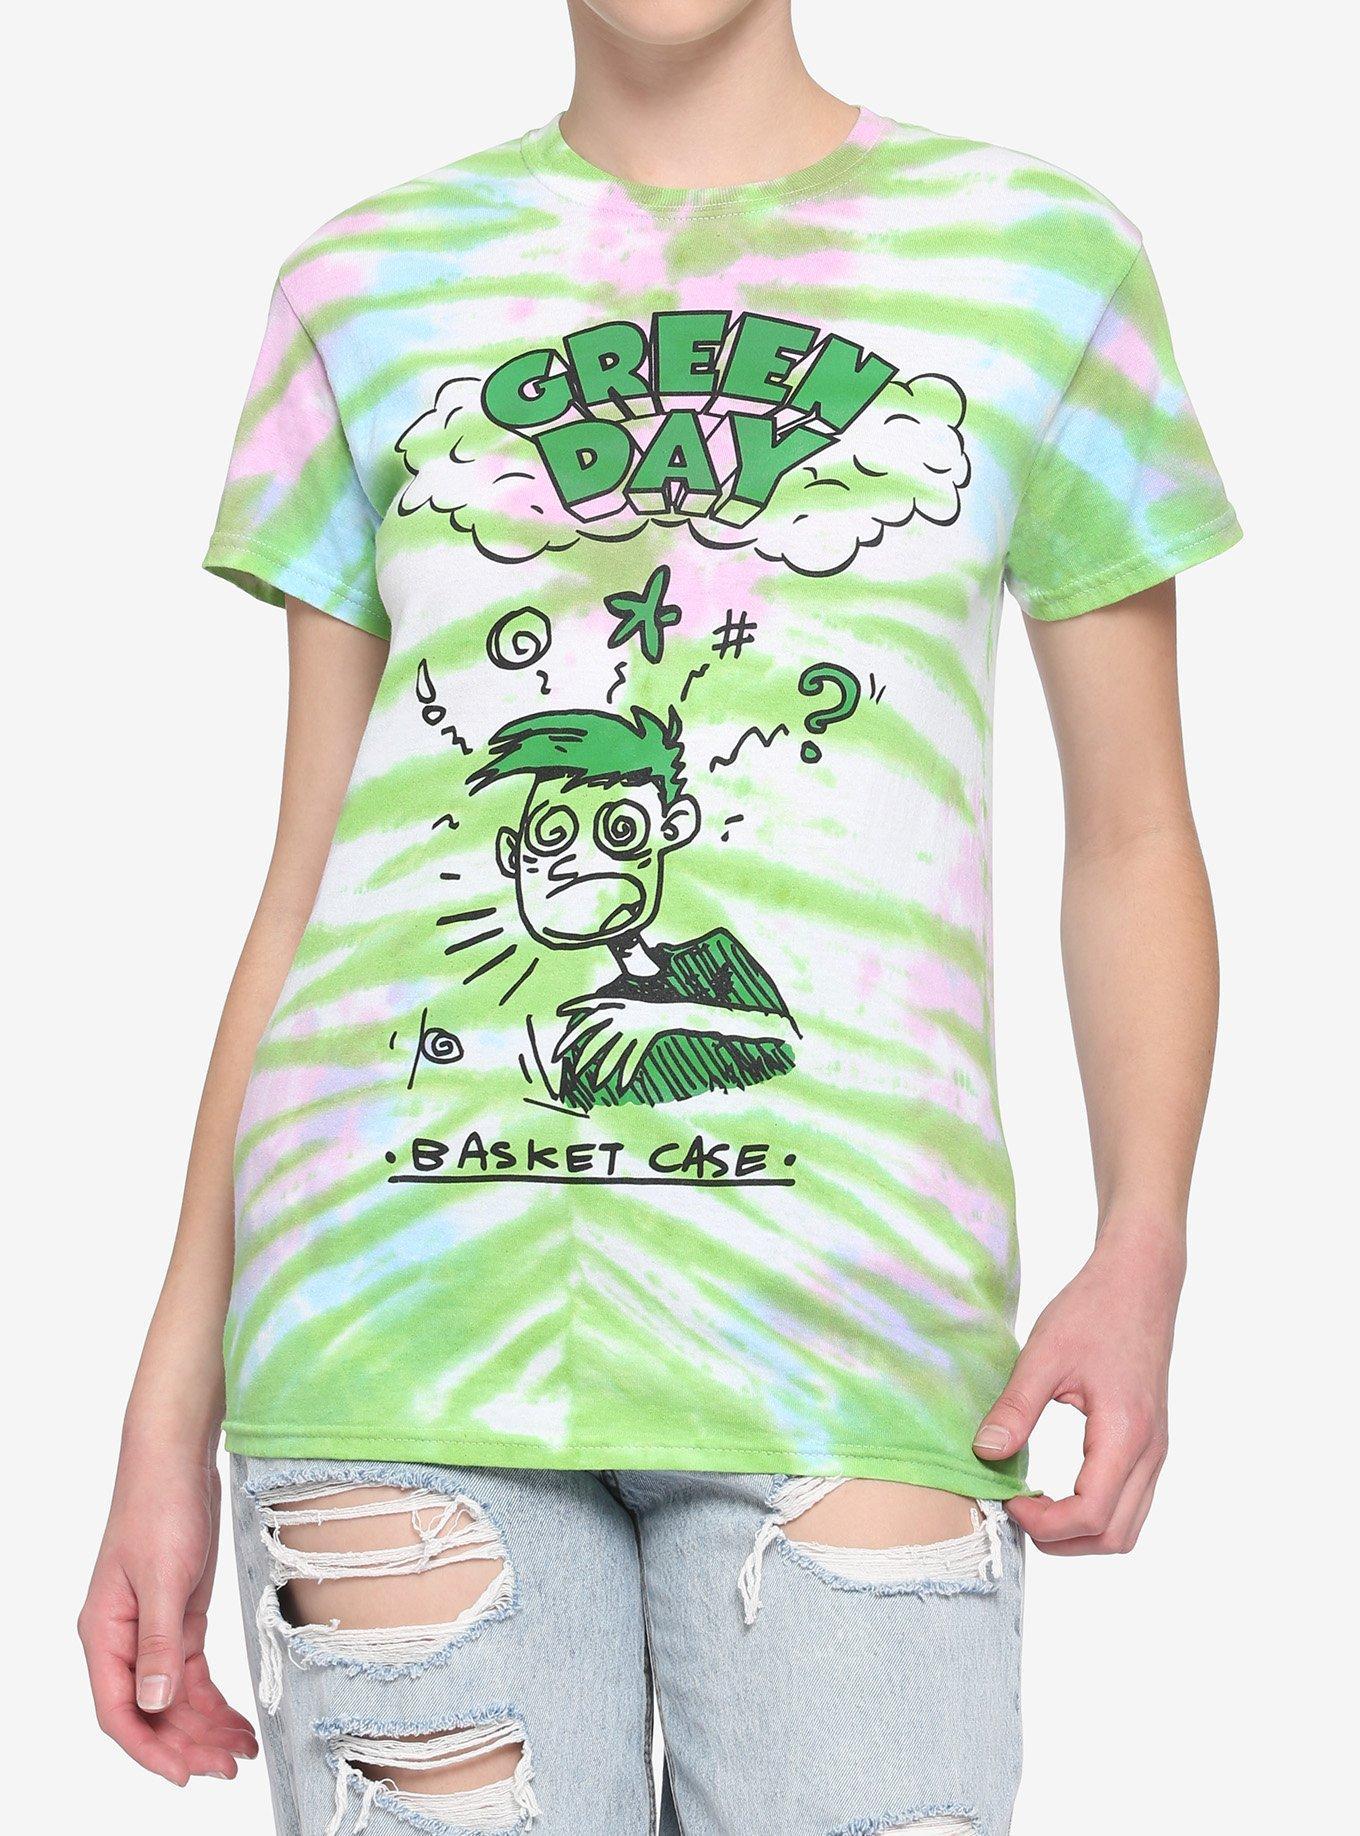 Green Day Dookie Boyfriend Fit Girls T-Shirt